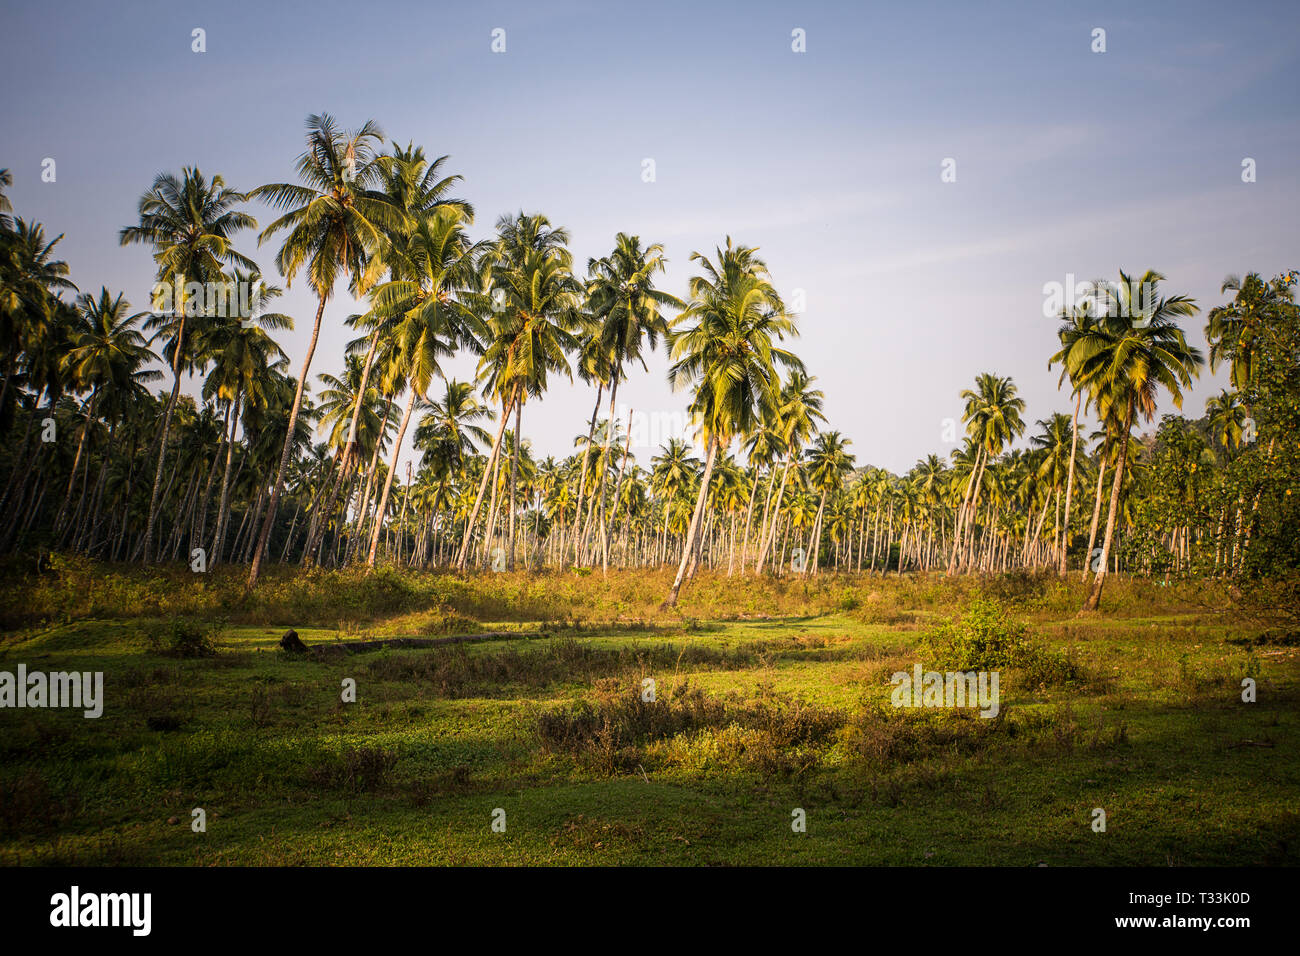 Hain aus Kokospalmen Rasen und blauer Himmel. Hohe Palmen mit Zöpfe auf der Plantage. Landwirtschaft im subtropischen Klima Stockfoto